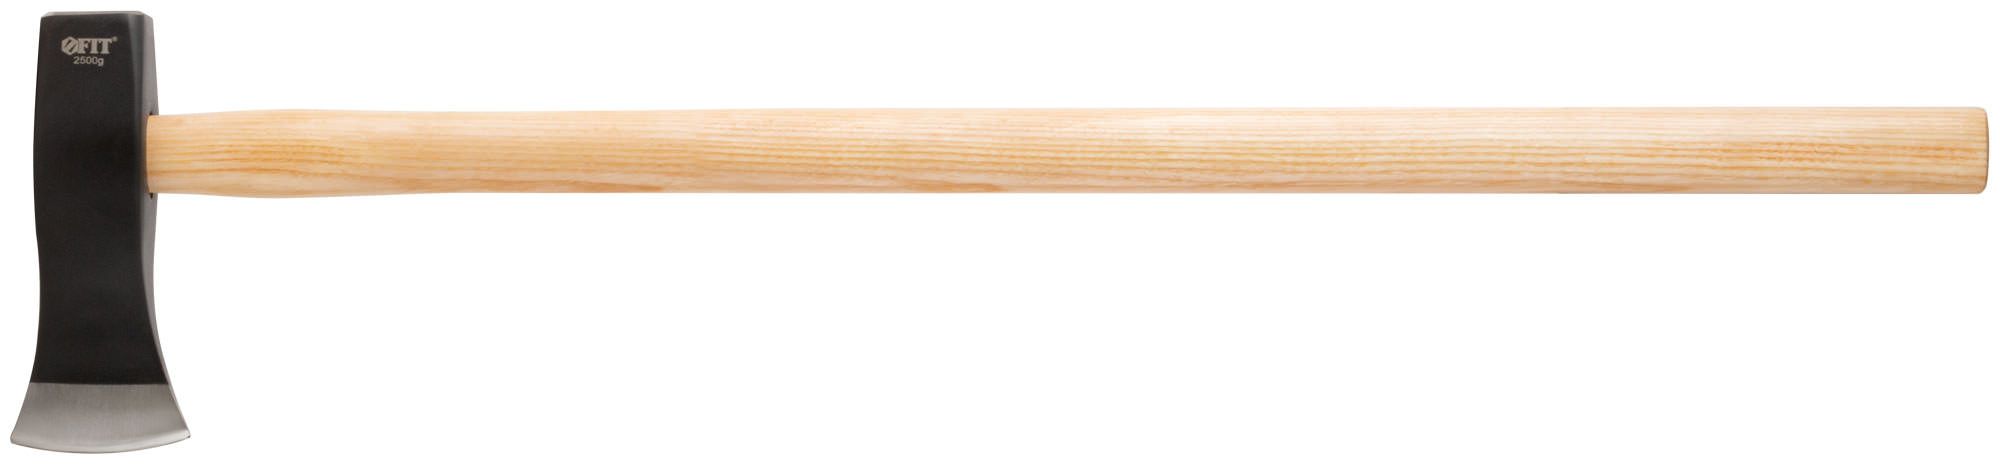 Топор-колун кованый, деревянная отполированная ручка 2500 гр. FIT арт .